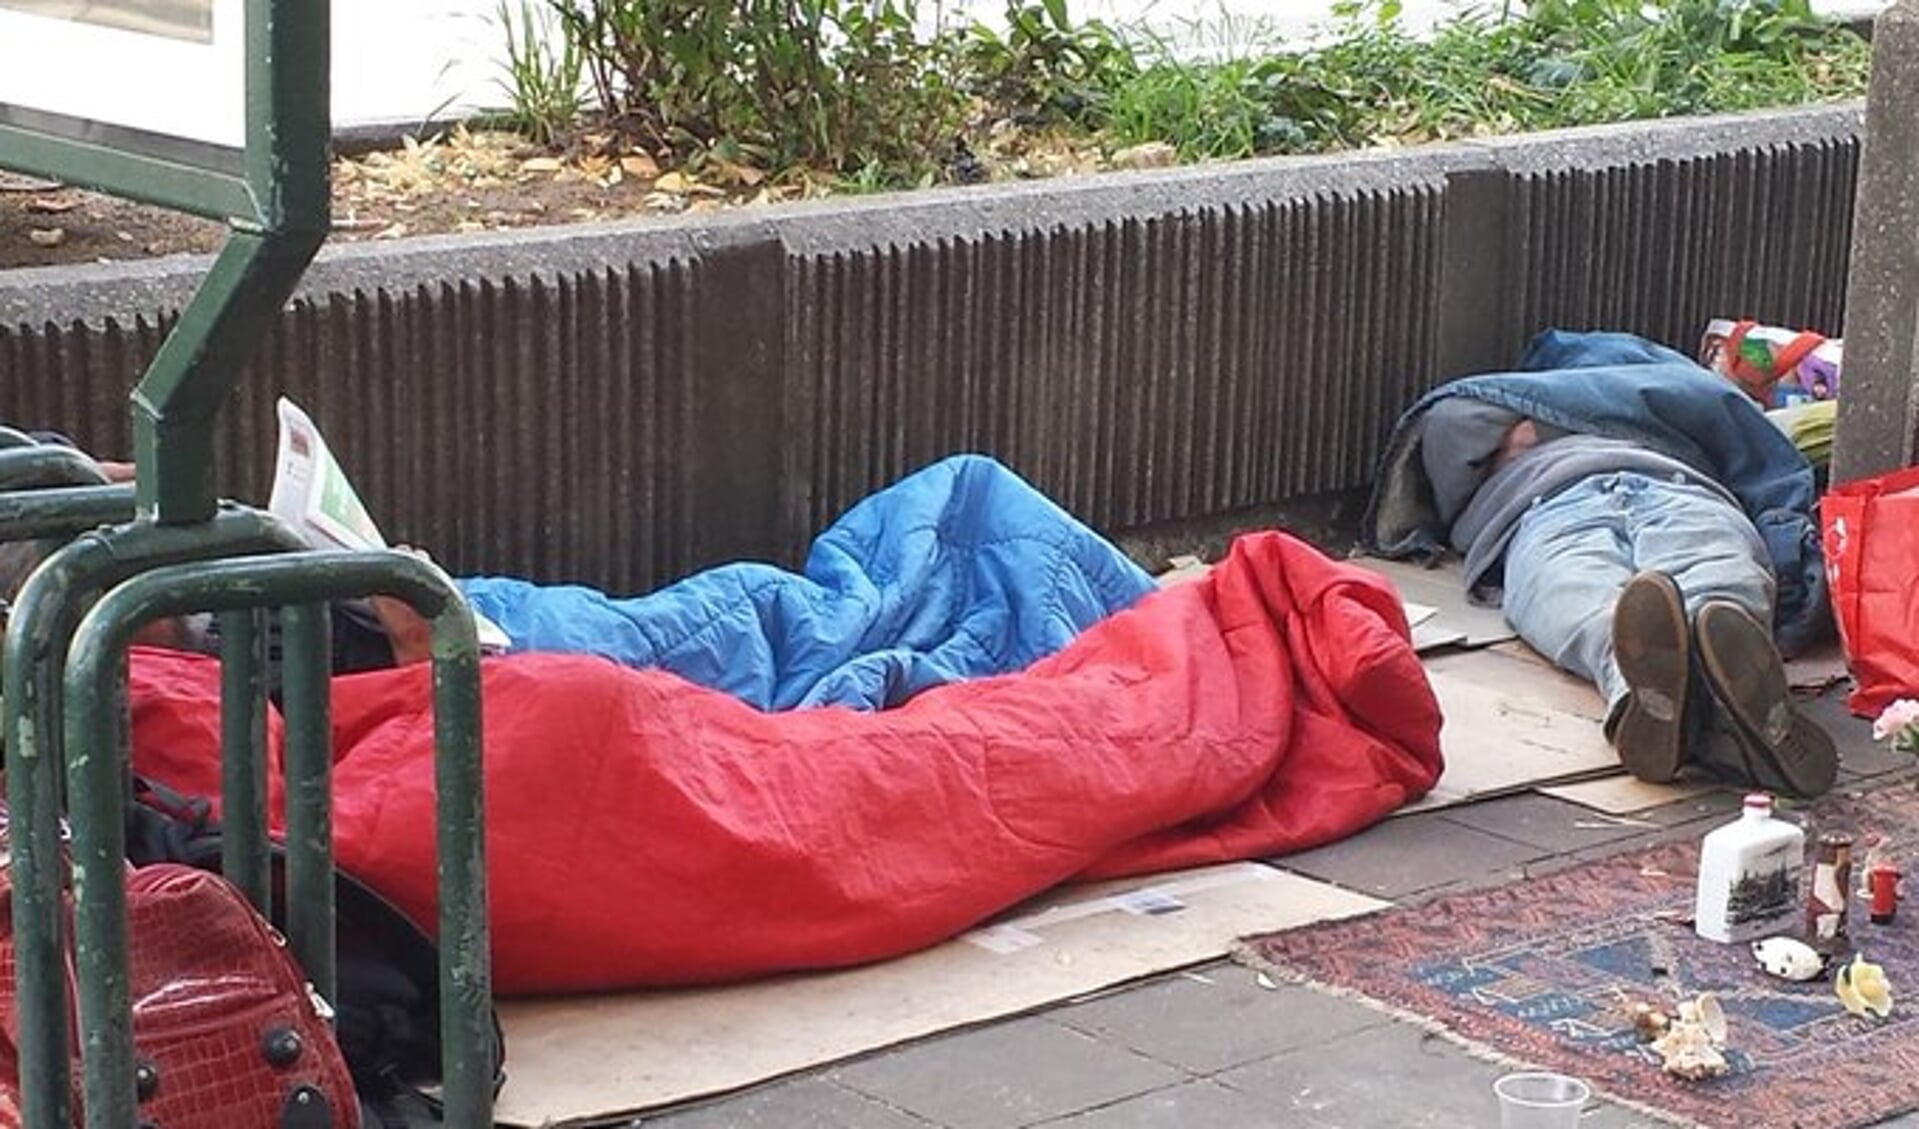 Jelle Kort van GroenLinks vraagt aandacht voor de opvang van daklozen. 